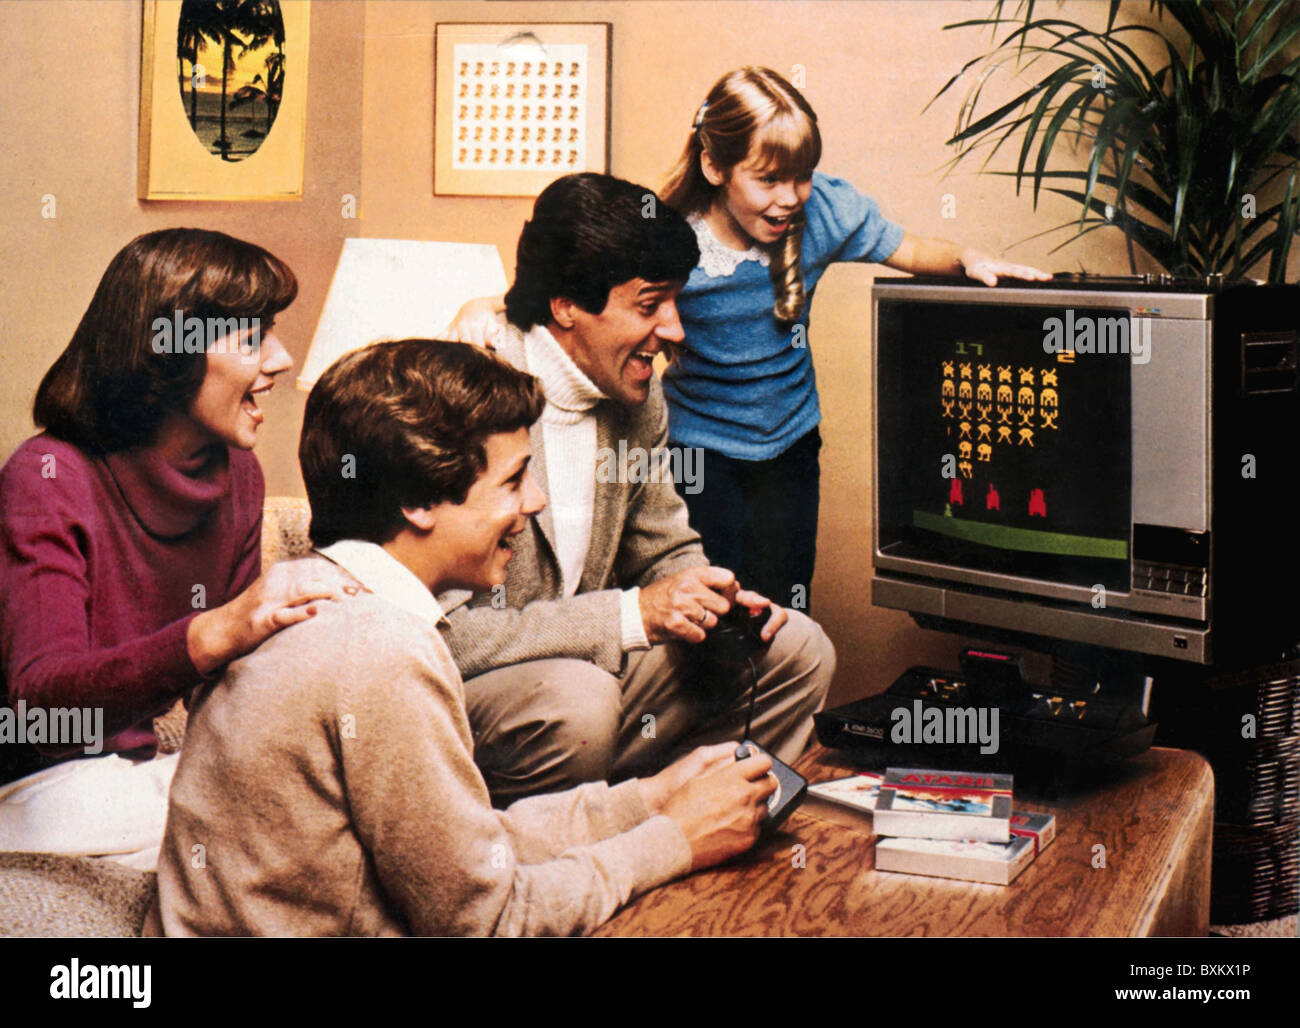 Jeux, jeux vidéo, système d'ordinateur vidéo Atari 2600, jeu vidéo précoce, famille avec paddle jouant à 'Space Invaders', 1978, droits supplémentaires-Clearences-non disponible Banque D'Images